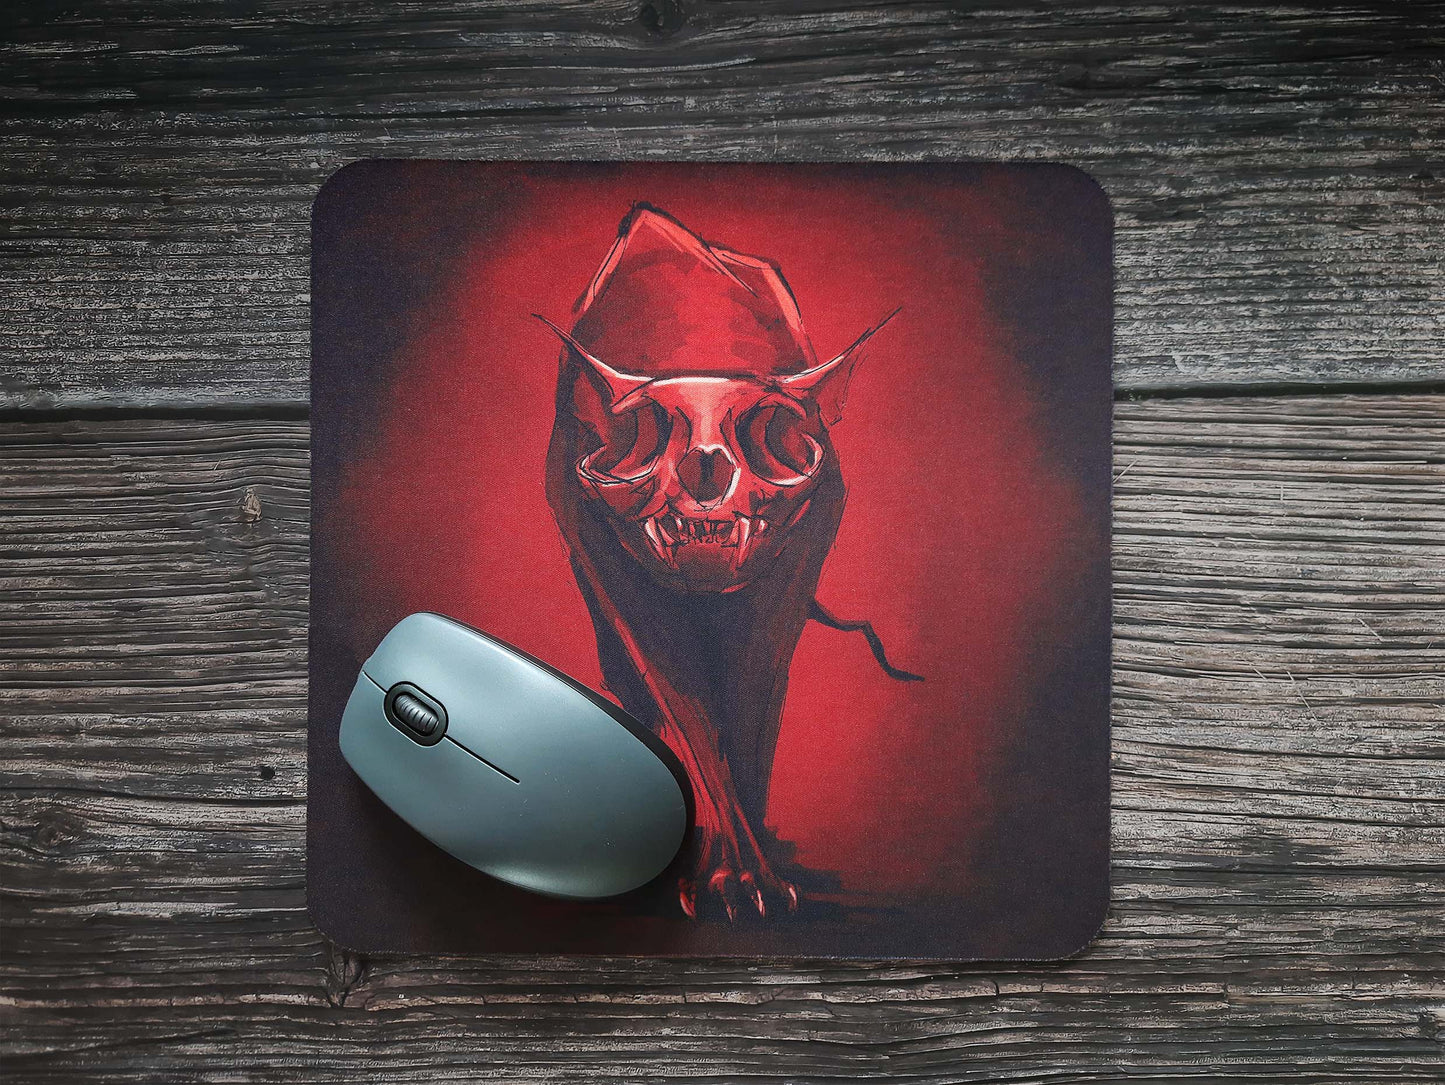 Mousepad textile “Zombiecat”